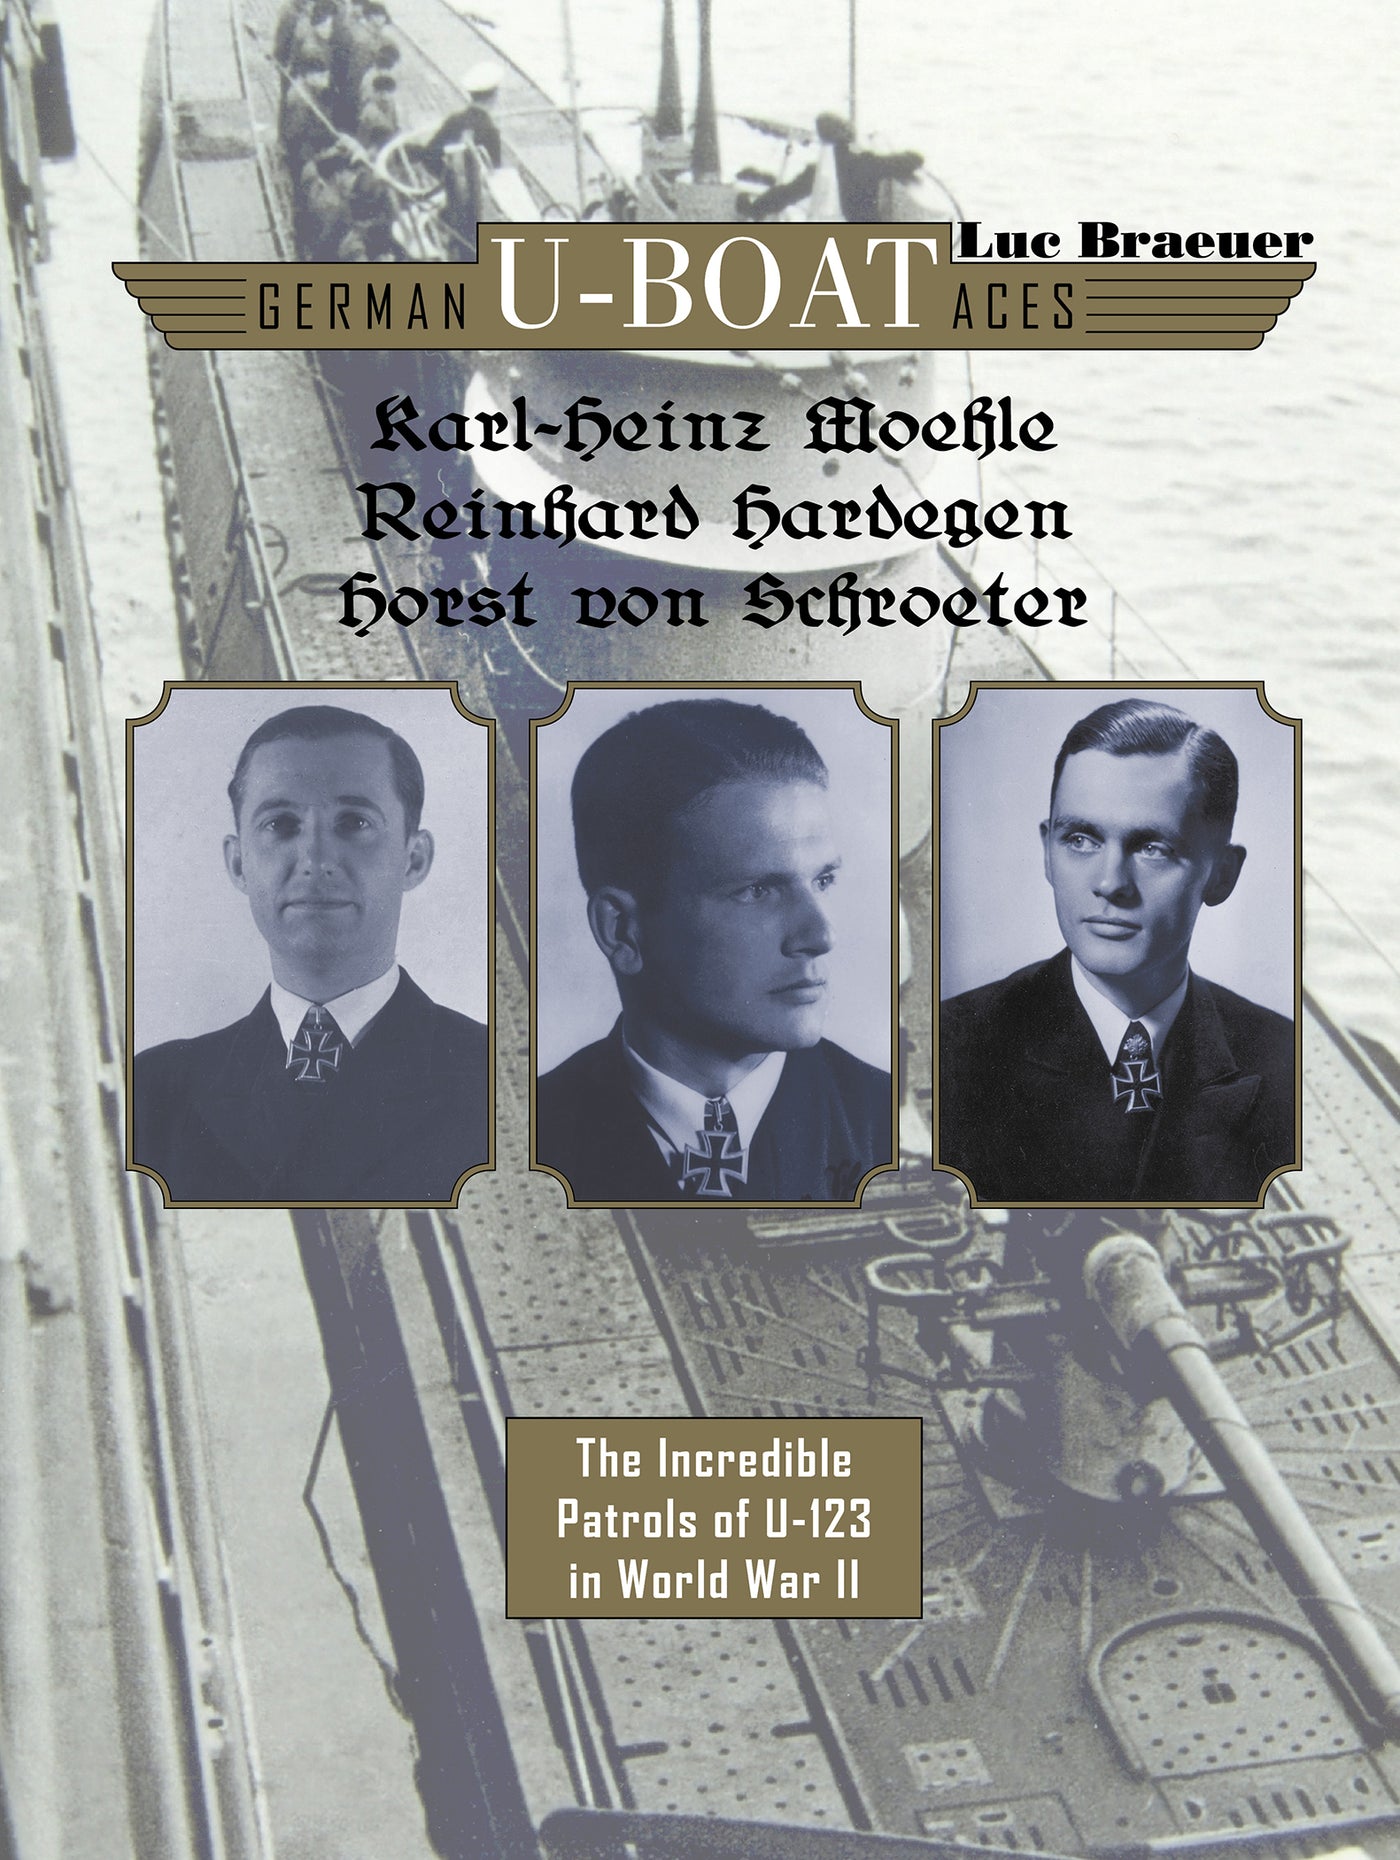 Die deutschen U-Boot-Asse Karl-Heinz Möhle, Reinhard Hardegen und Horst von Schroeter 